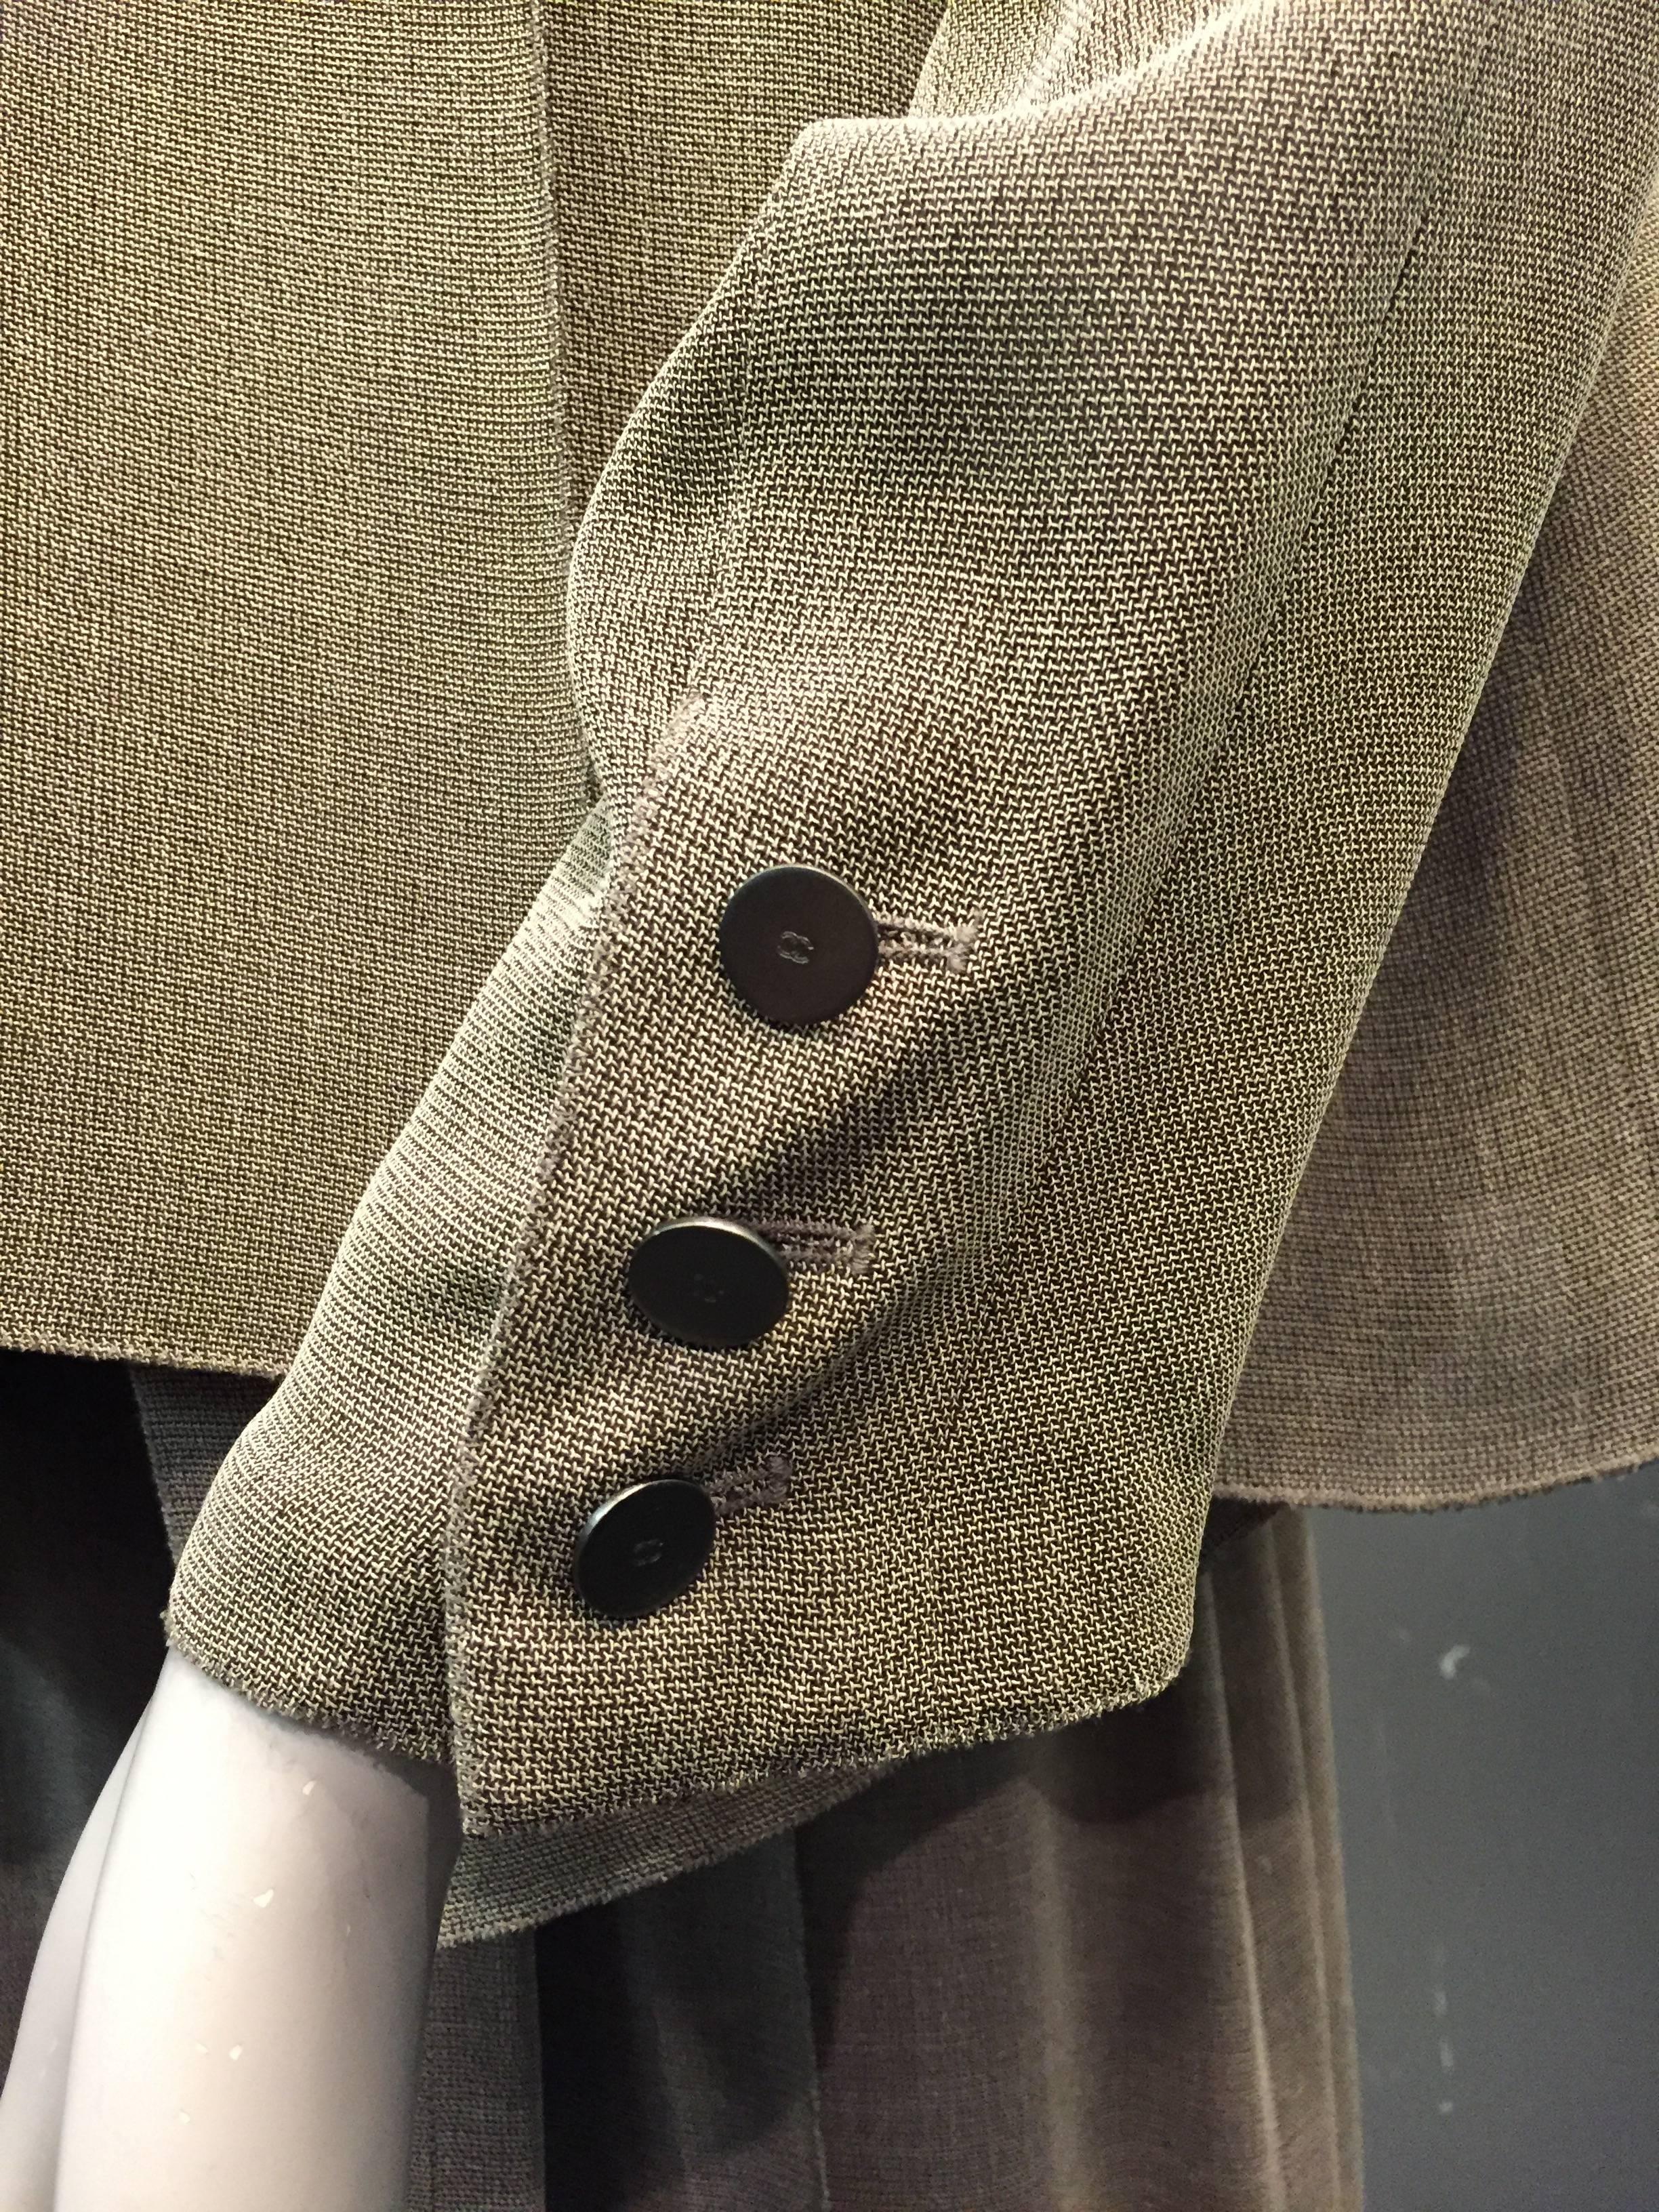 Women's Chanel Loden Green Summer 3-Piece Skirt Suit w/ High Slits